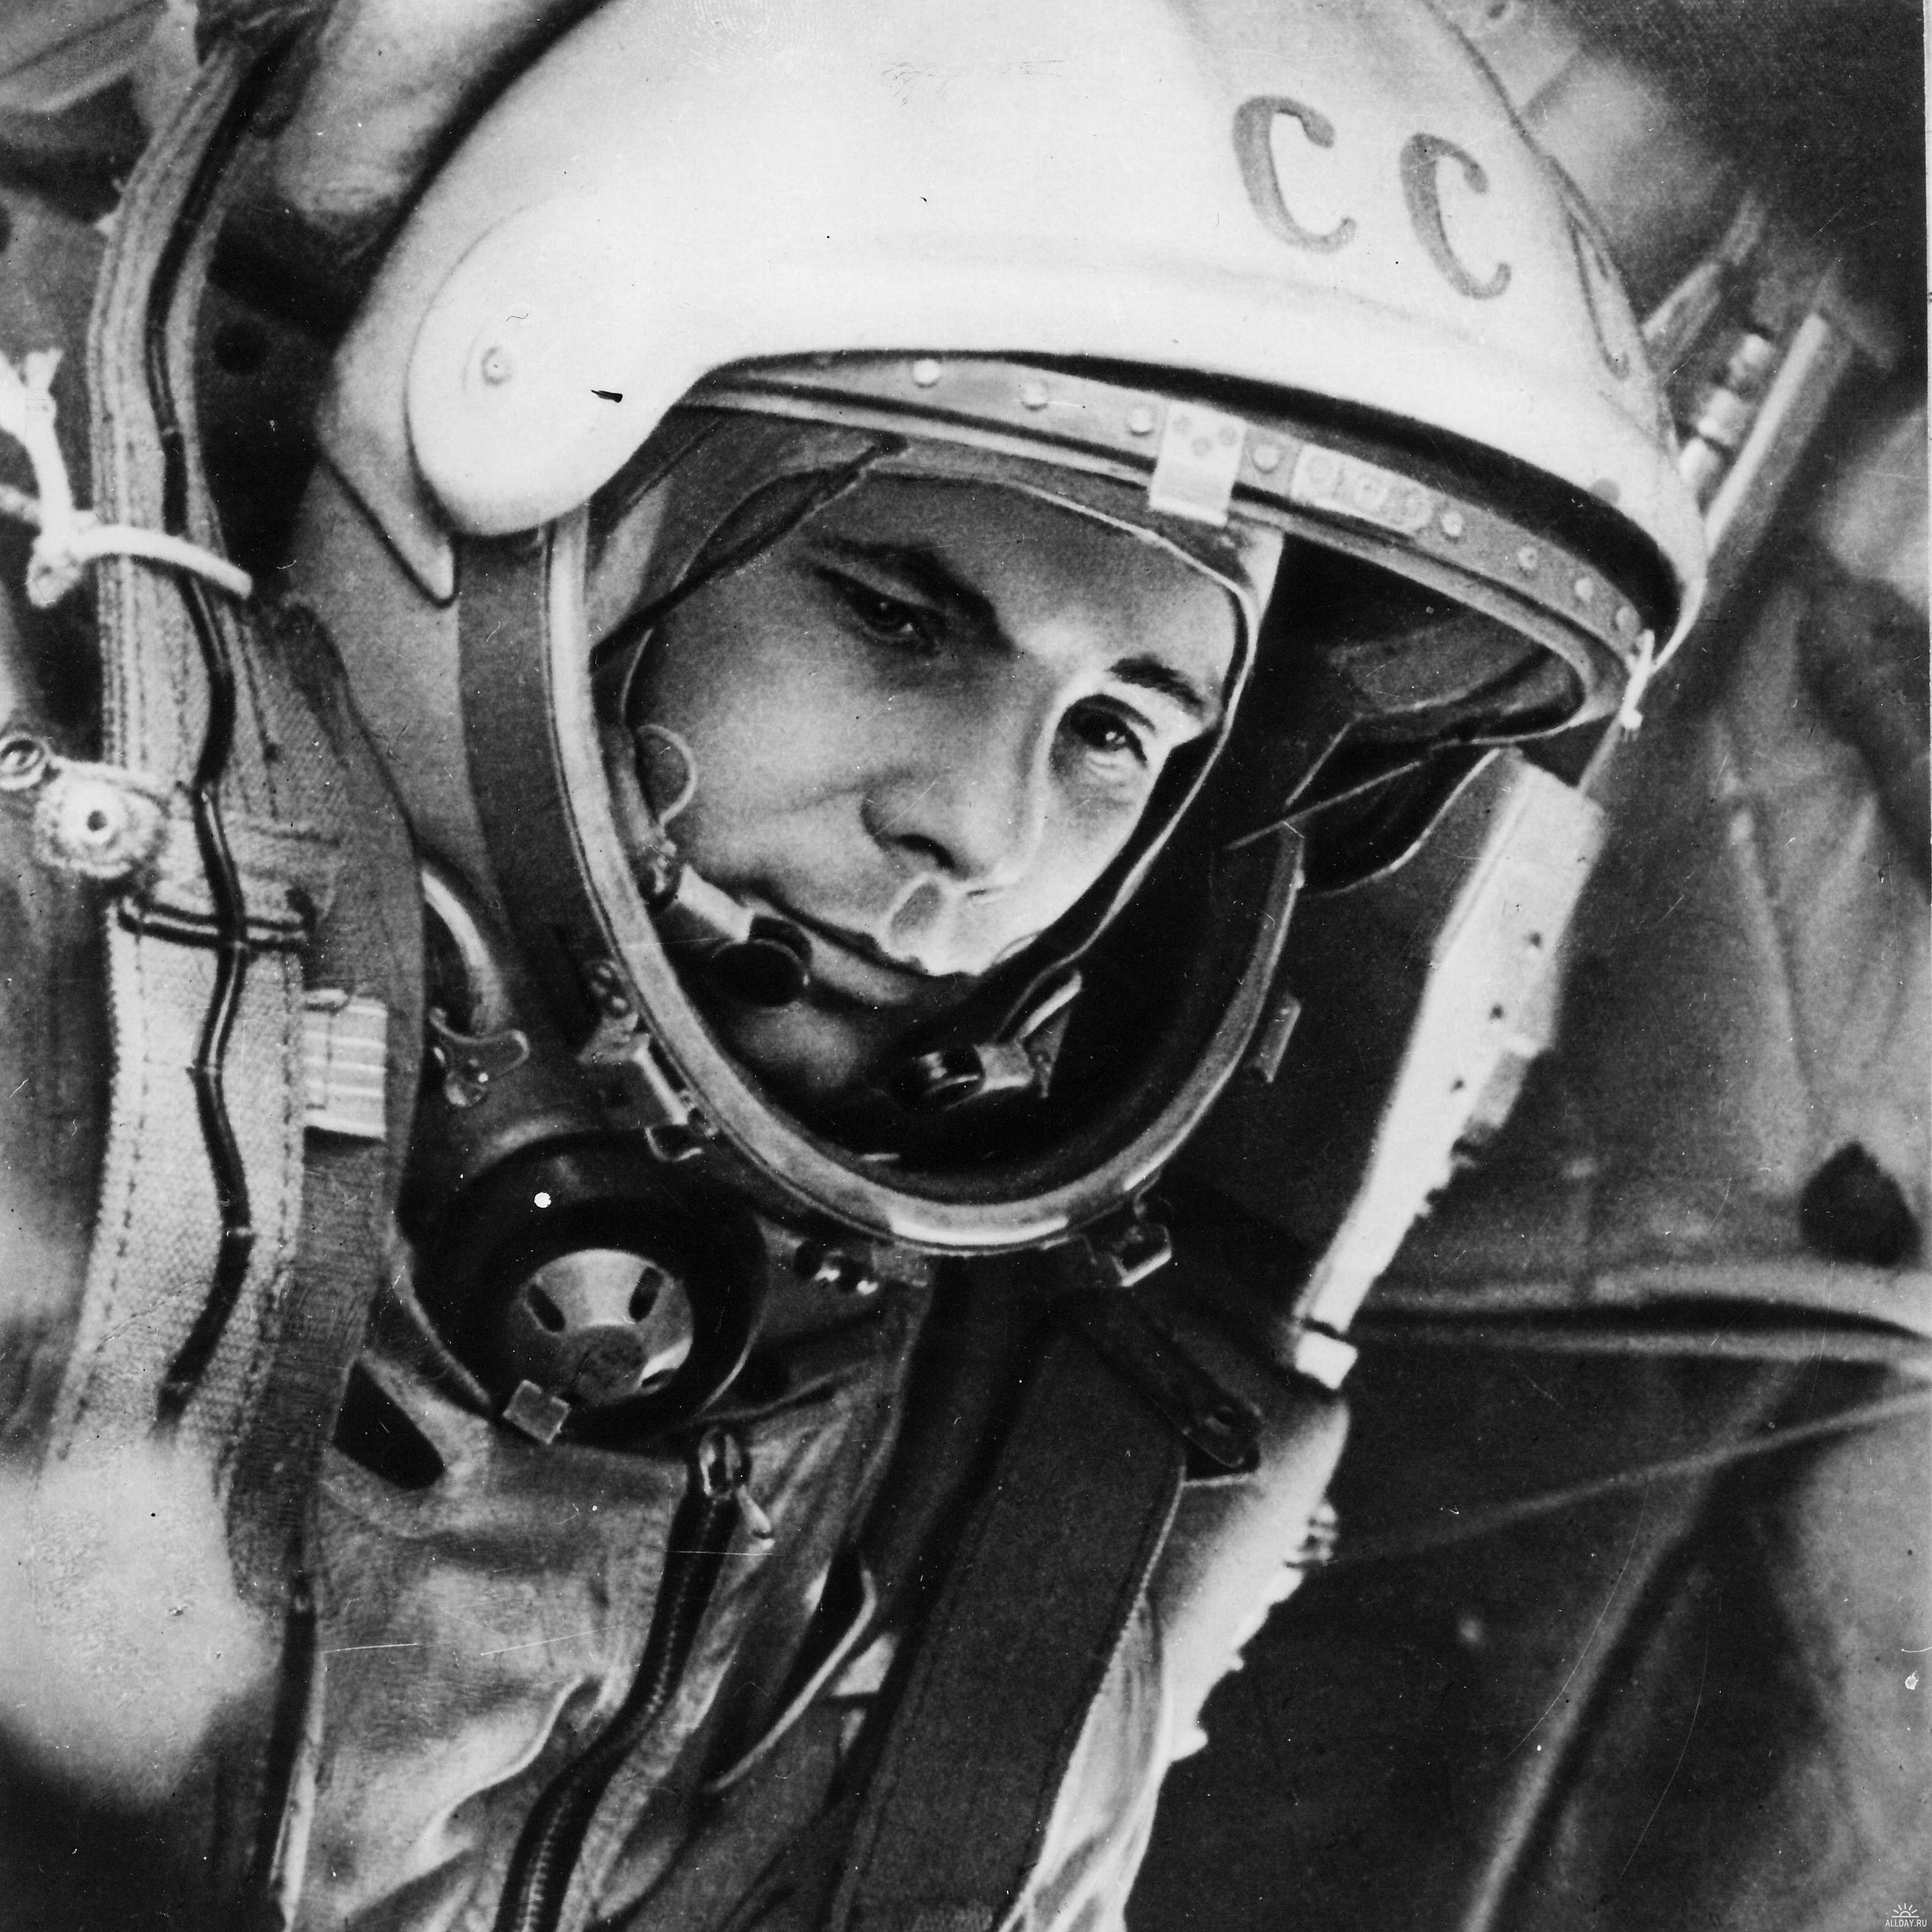 Yuri Gagarin: The First Human in Space